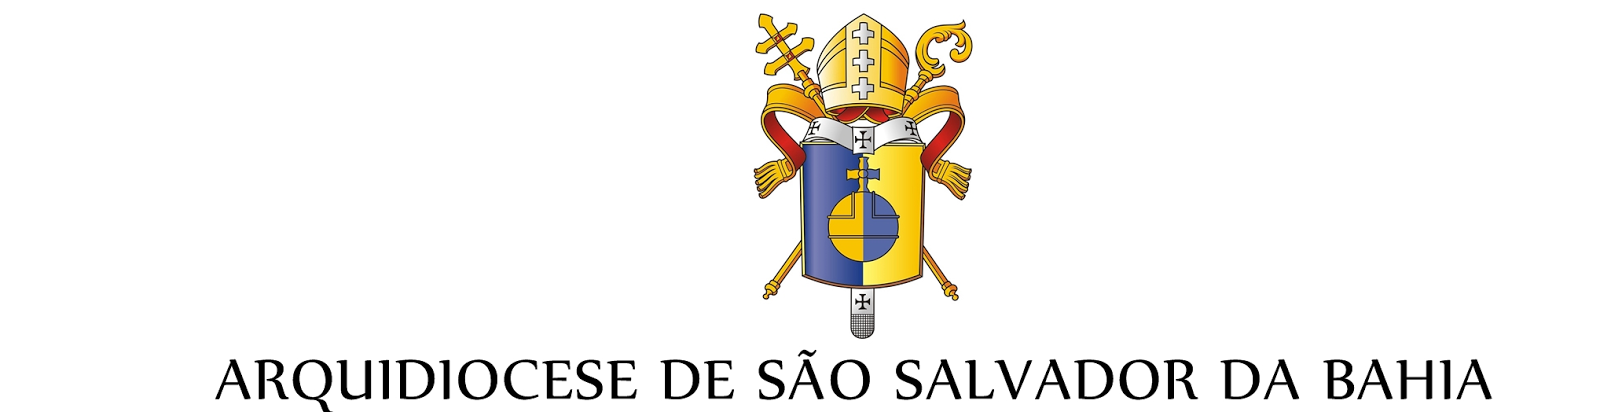 Arquidiocese Primaz de São Salvador da Bahia